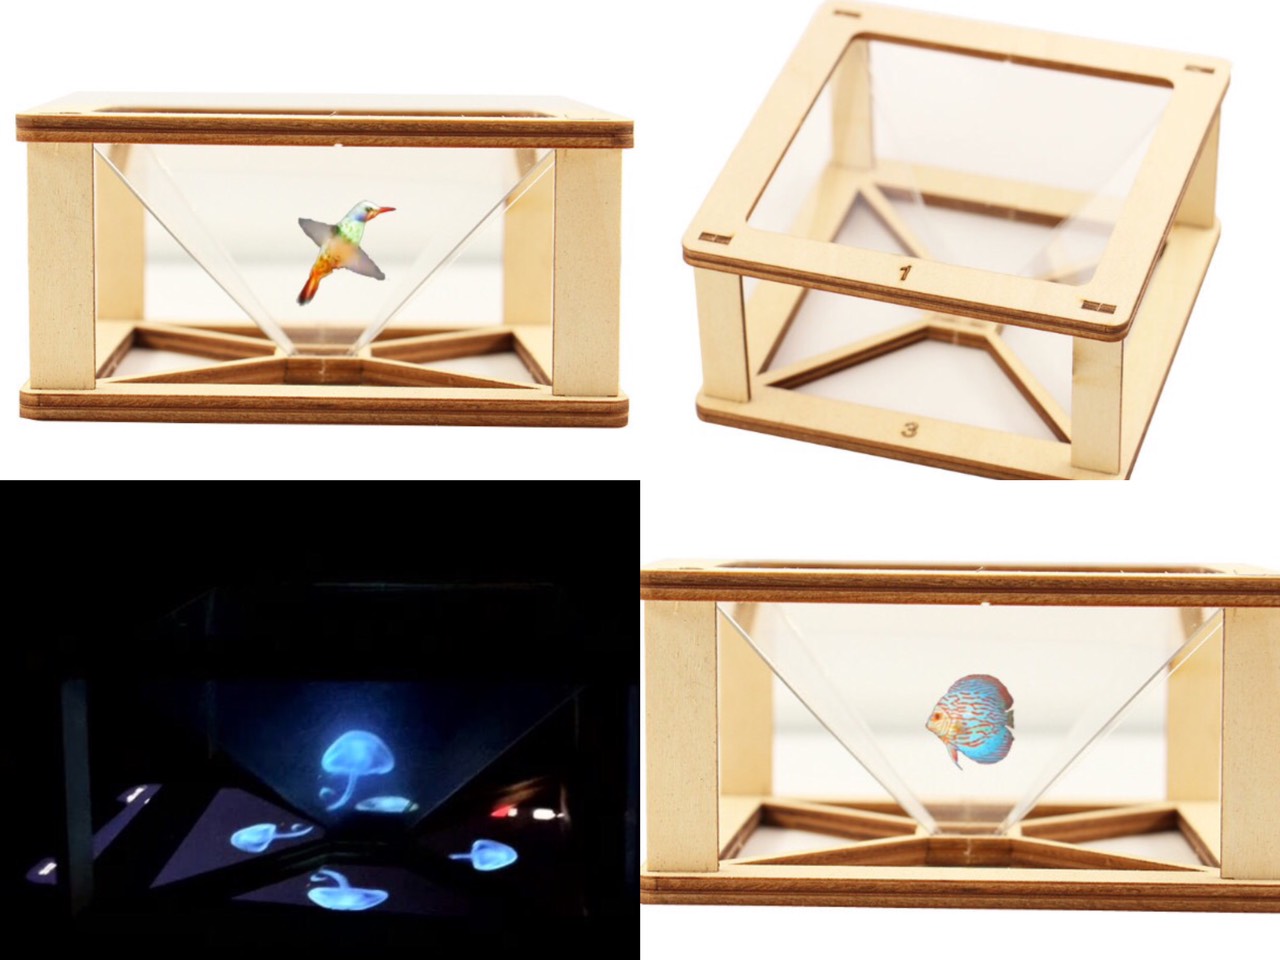 Đồ chơi khoa học Stem gỗ bé lắp ráp trình diễn hình ảnh từ chuyển động 2 chiều sang chuyển động 3 chiều sinh động